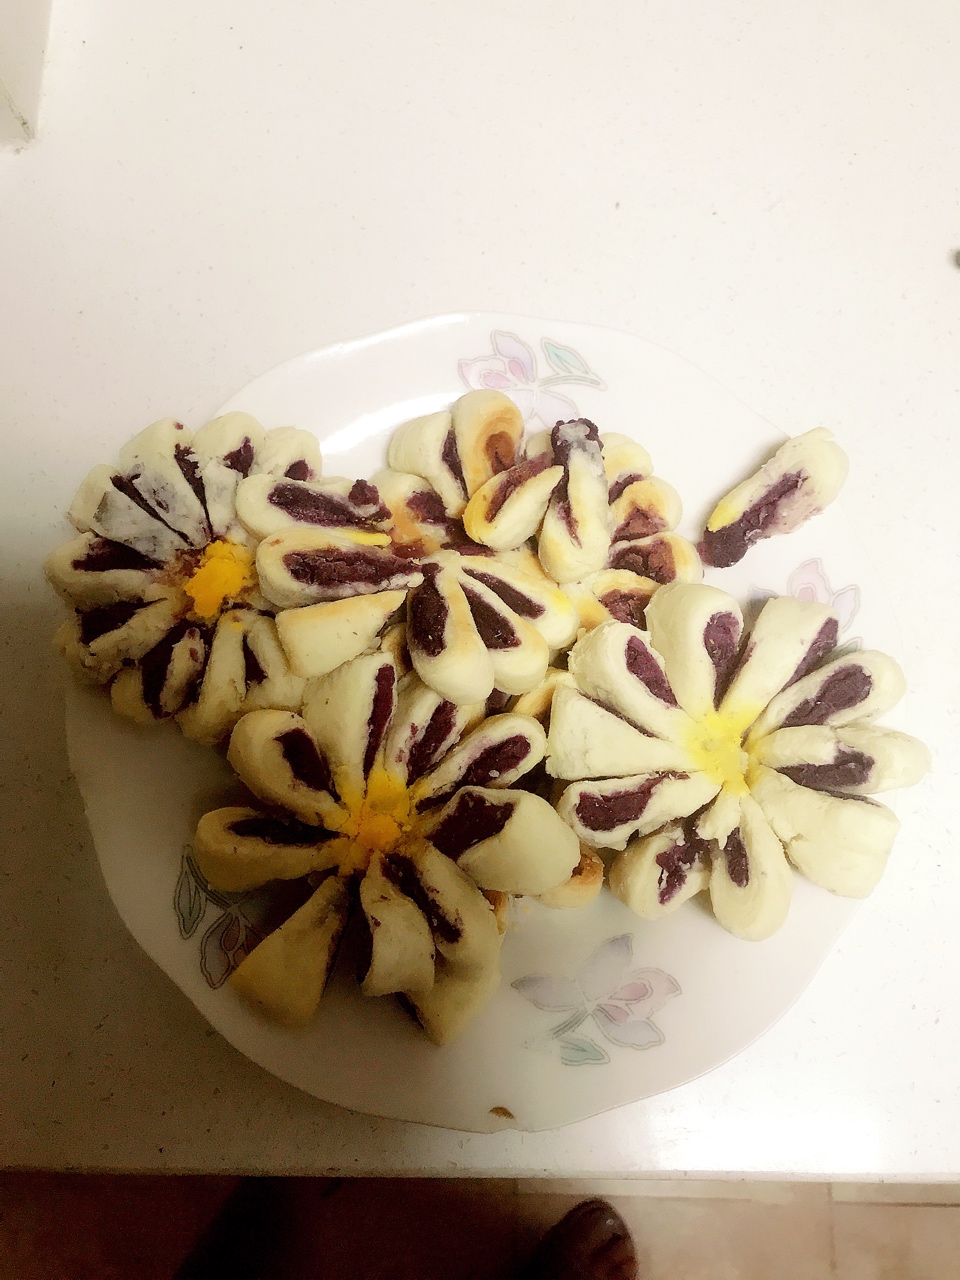 紫薯菊花酥